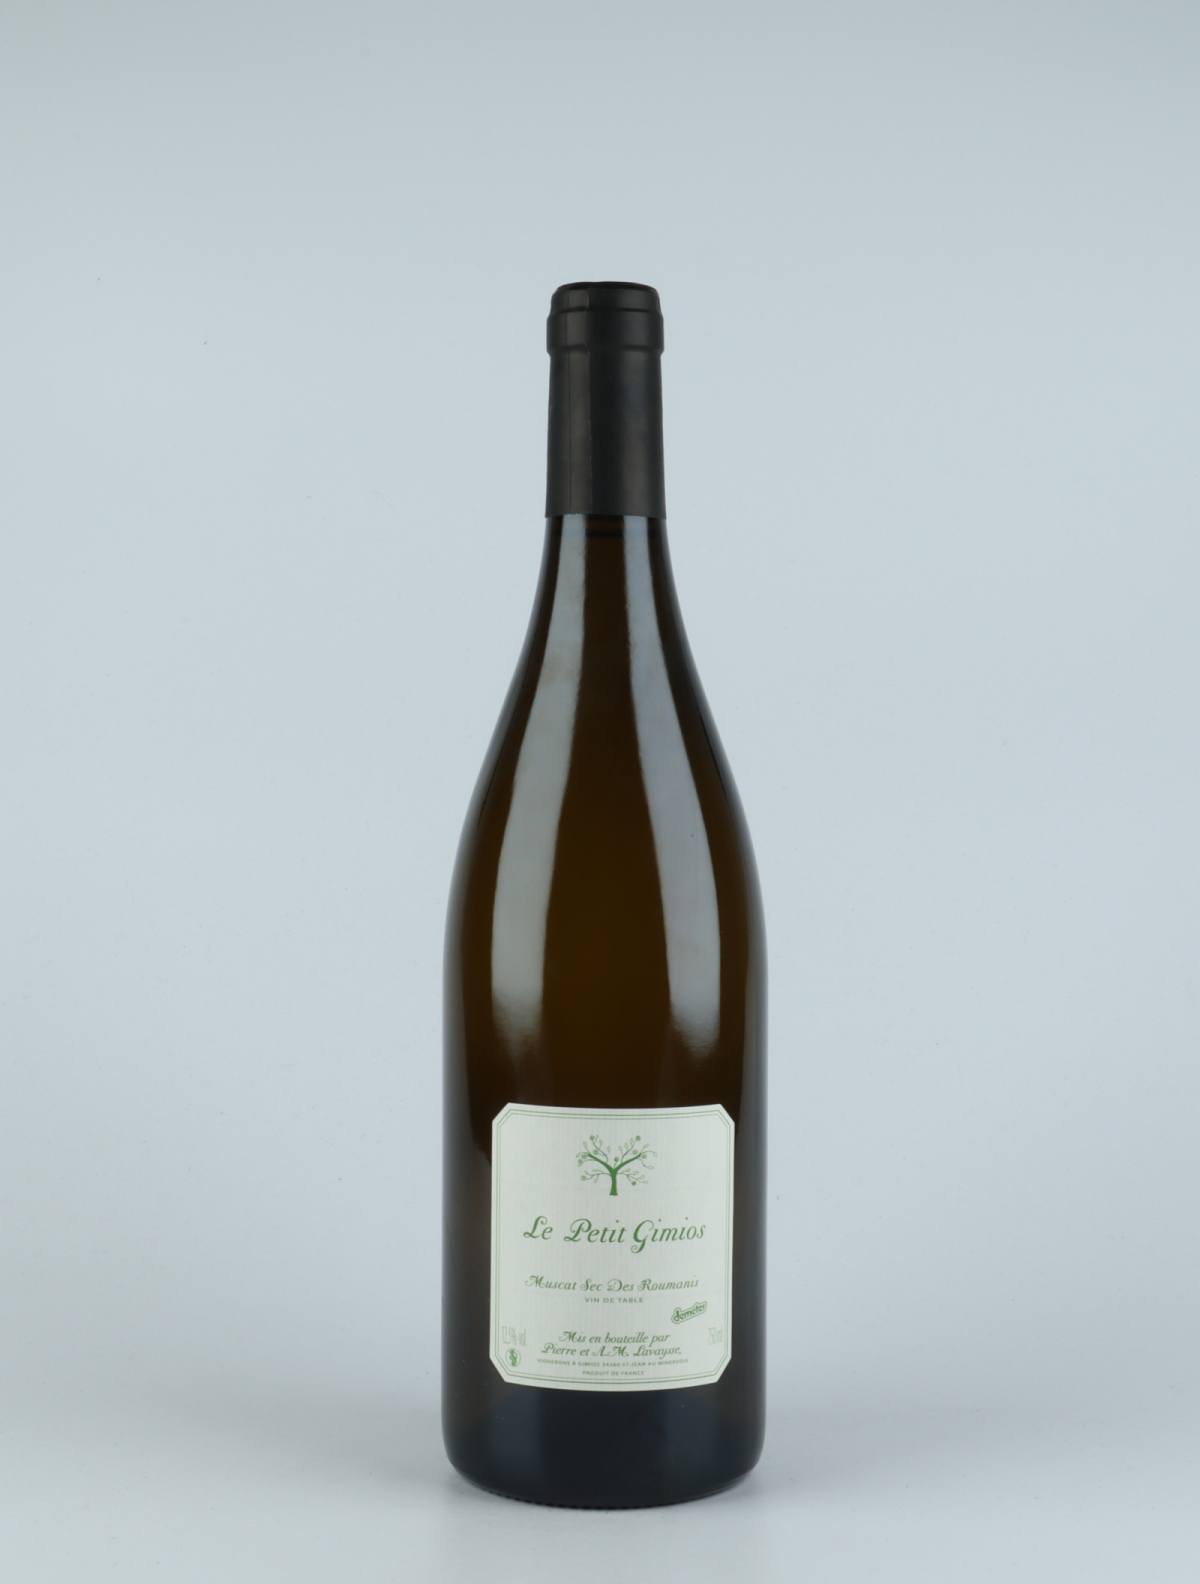 A bottle 2019 Muscat sec White wine from Le Petit Domaine de Gimios, Rousillon in France